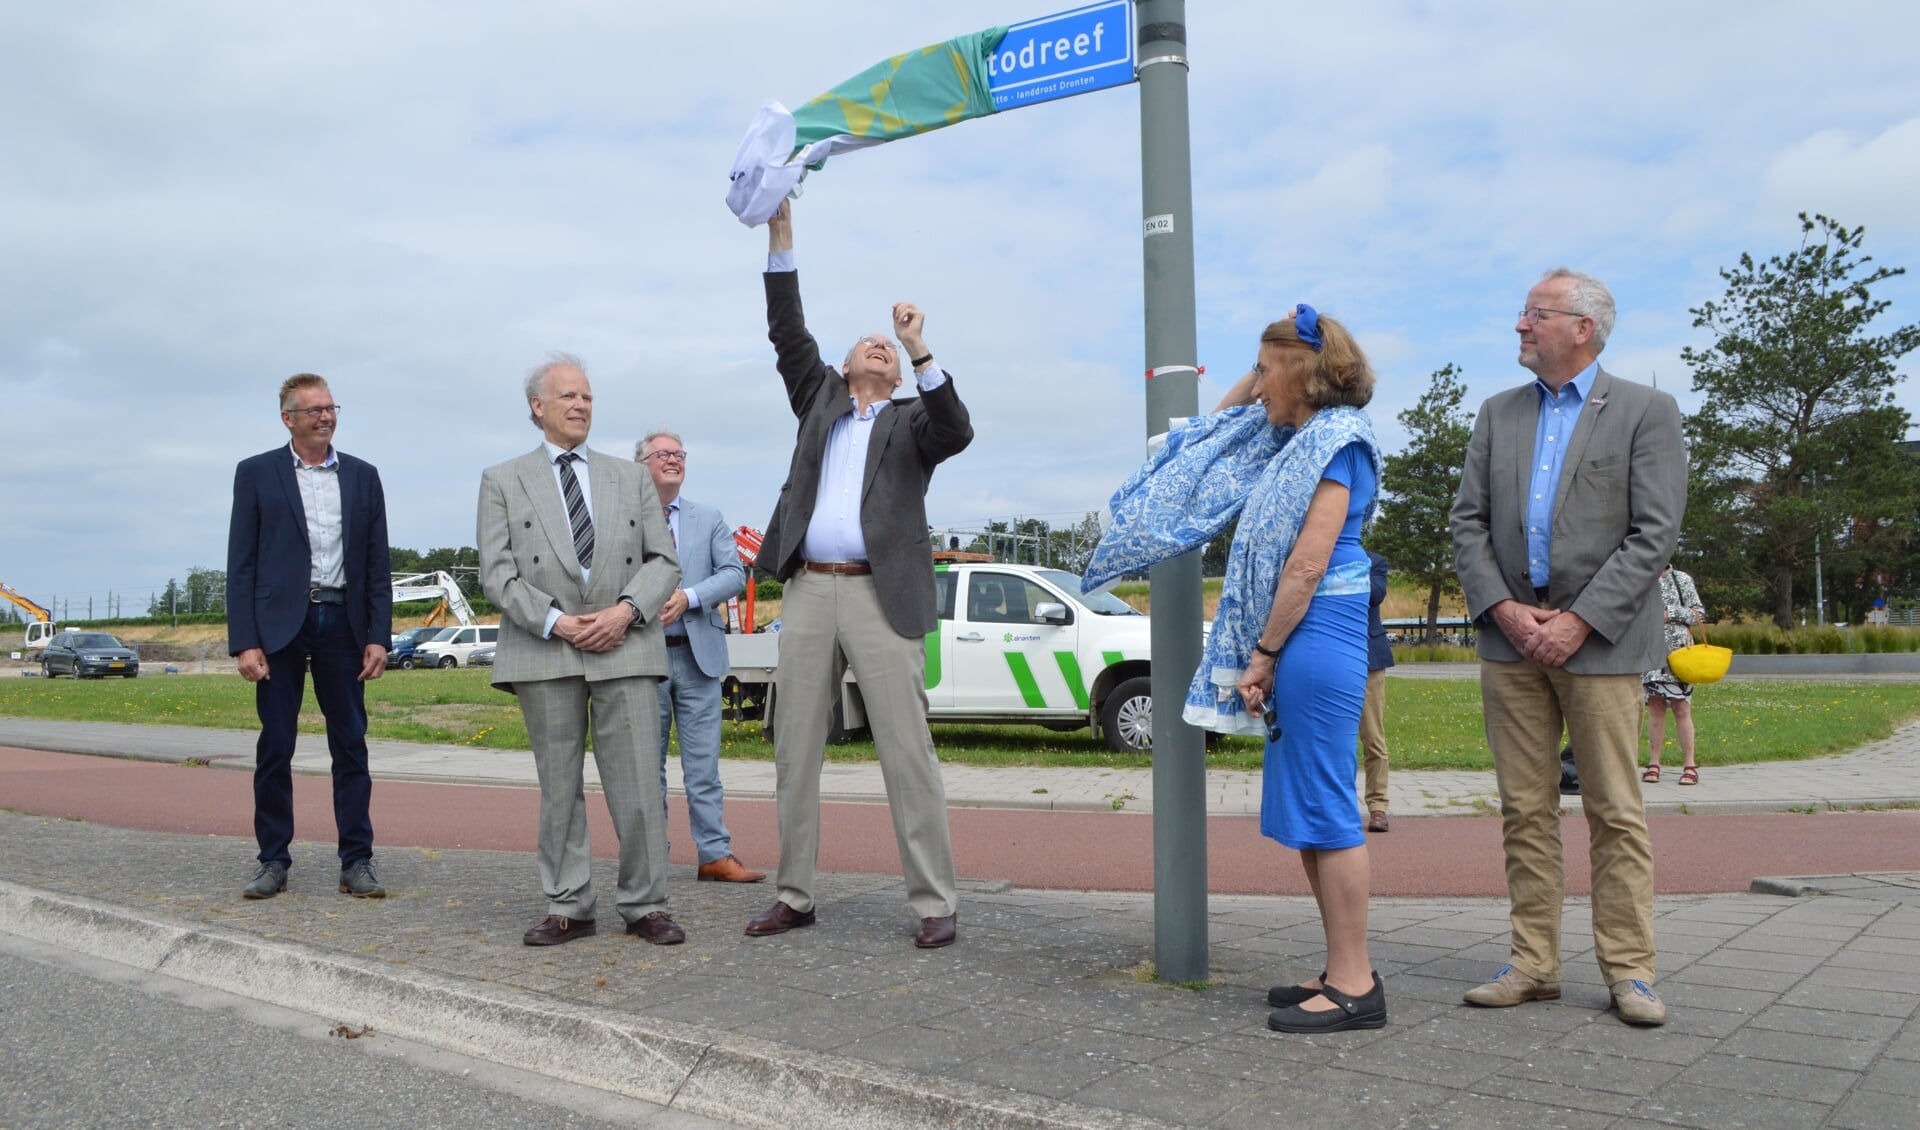 In het bijzijn van zijn broer en zus, de burgemeester en de straatnamencommissie onthult Jan Michiel Otto het straatnaambord.